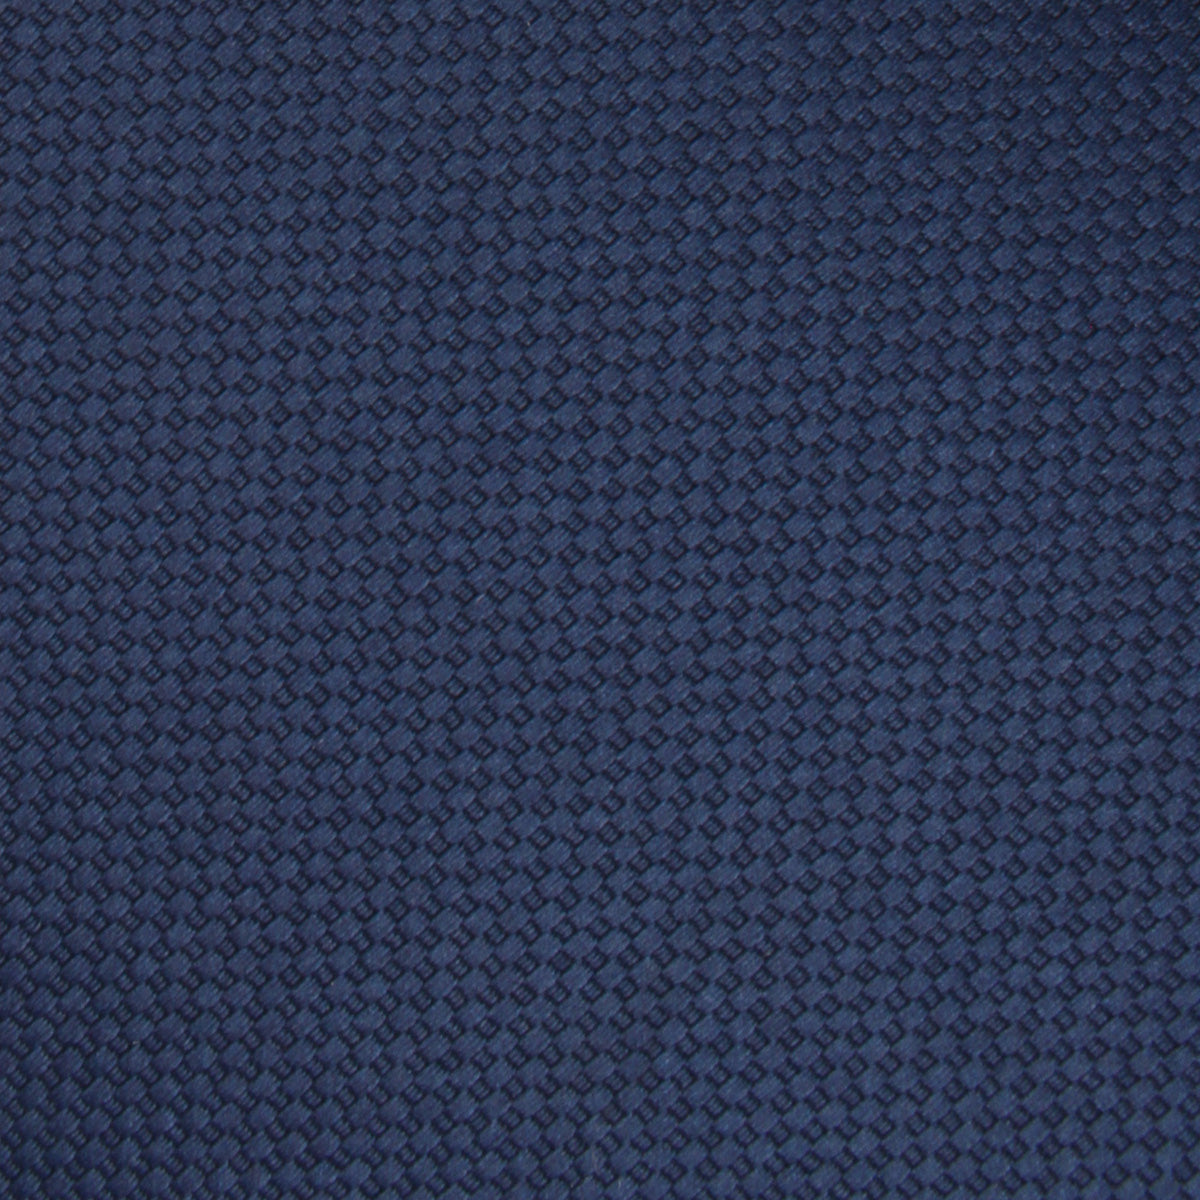 Navy Blue Basket Weave Skinny Tie Fabric